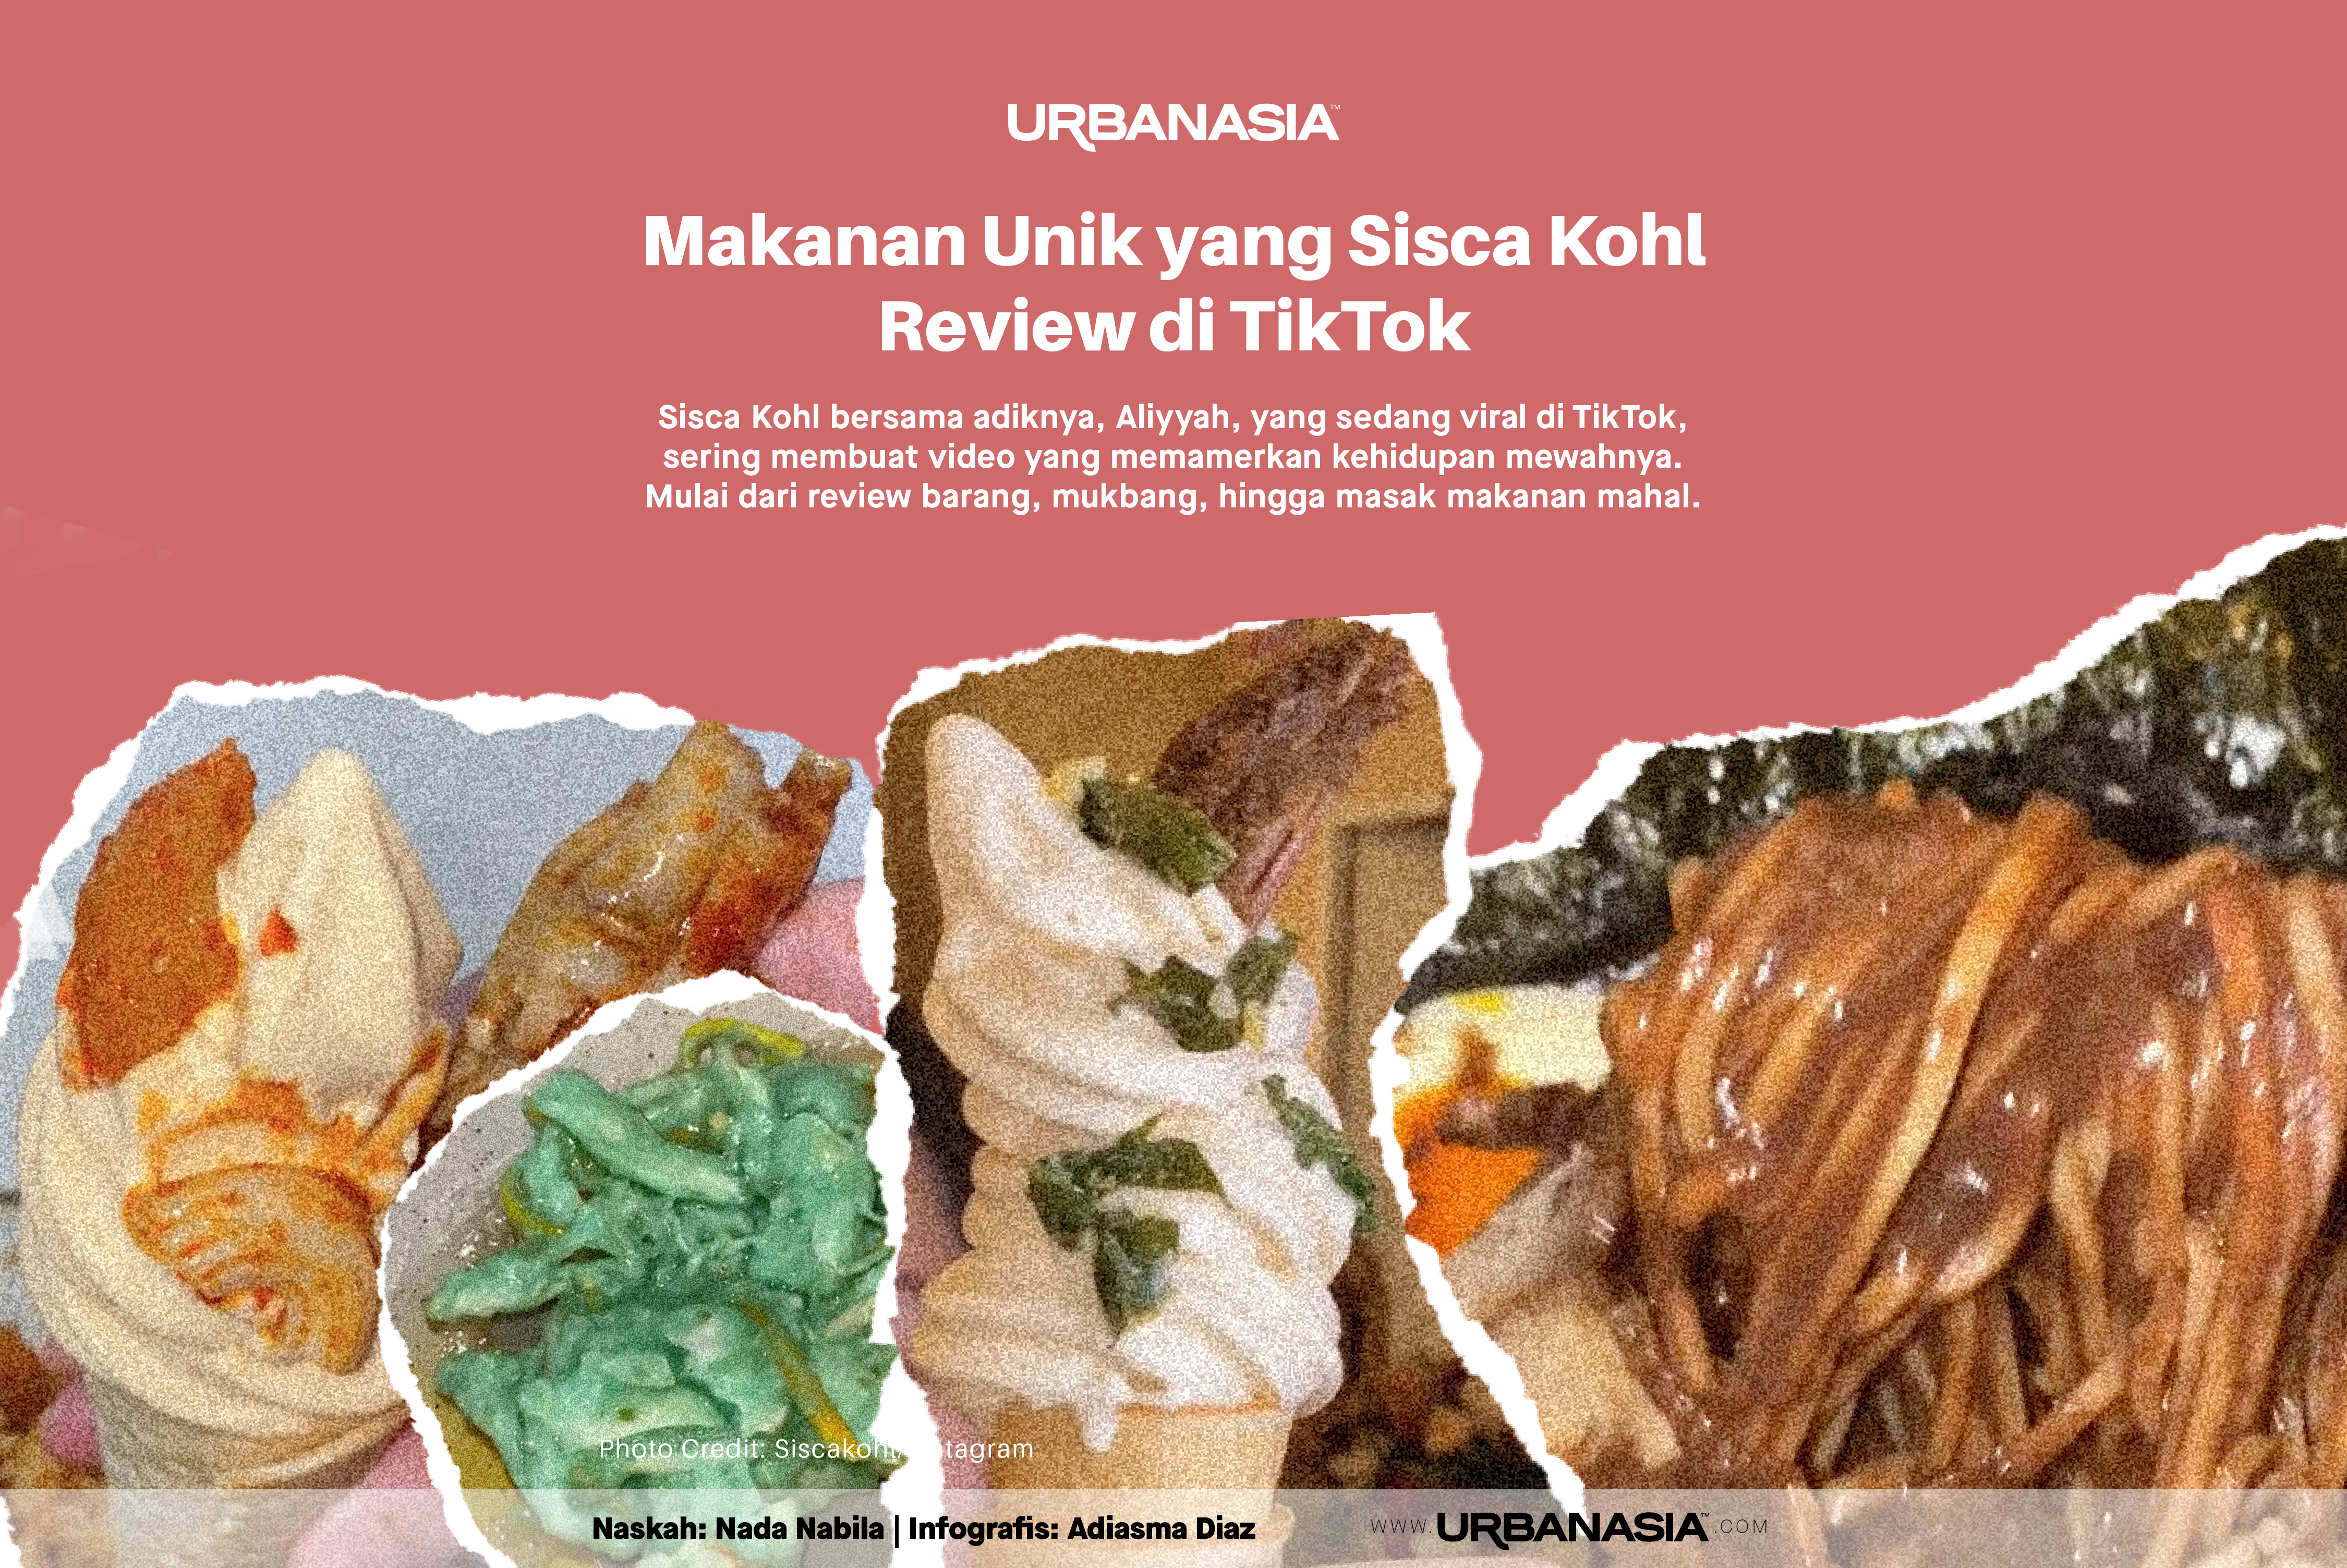 [INFOGRAFIS] Makanan Unik yang Direview Sisca Kohl di TikTok